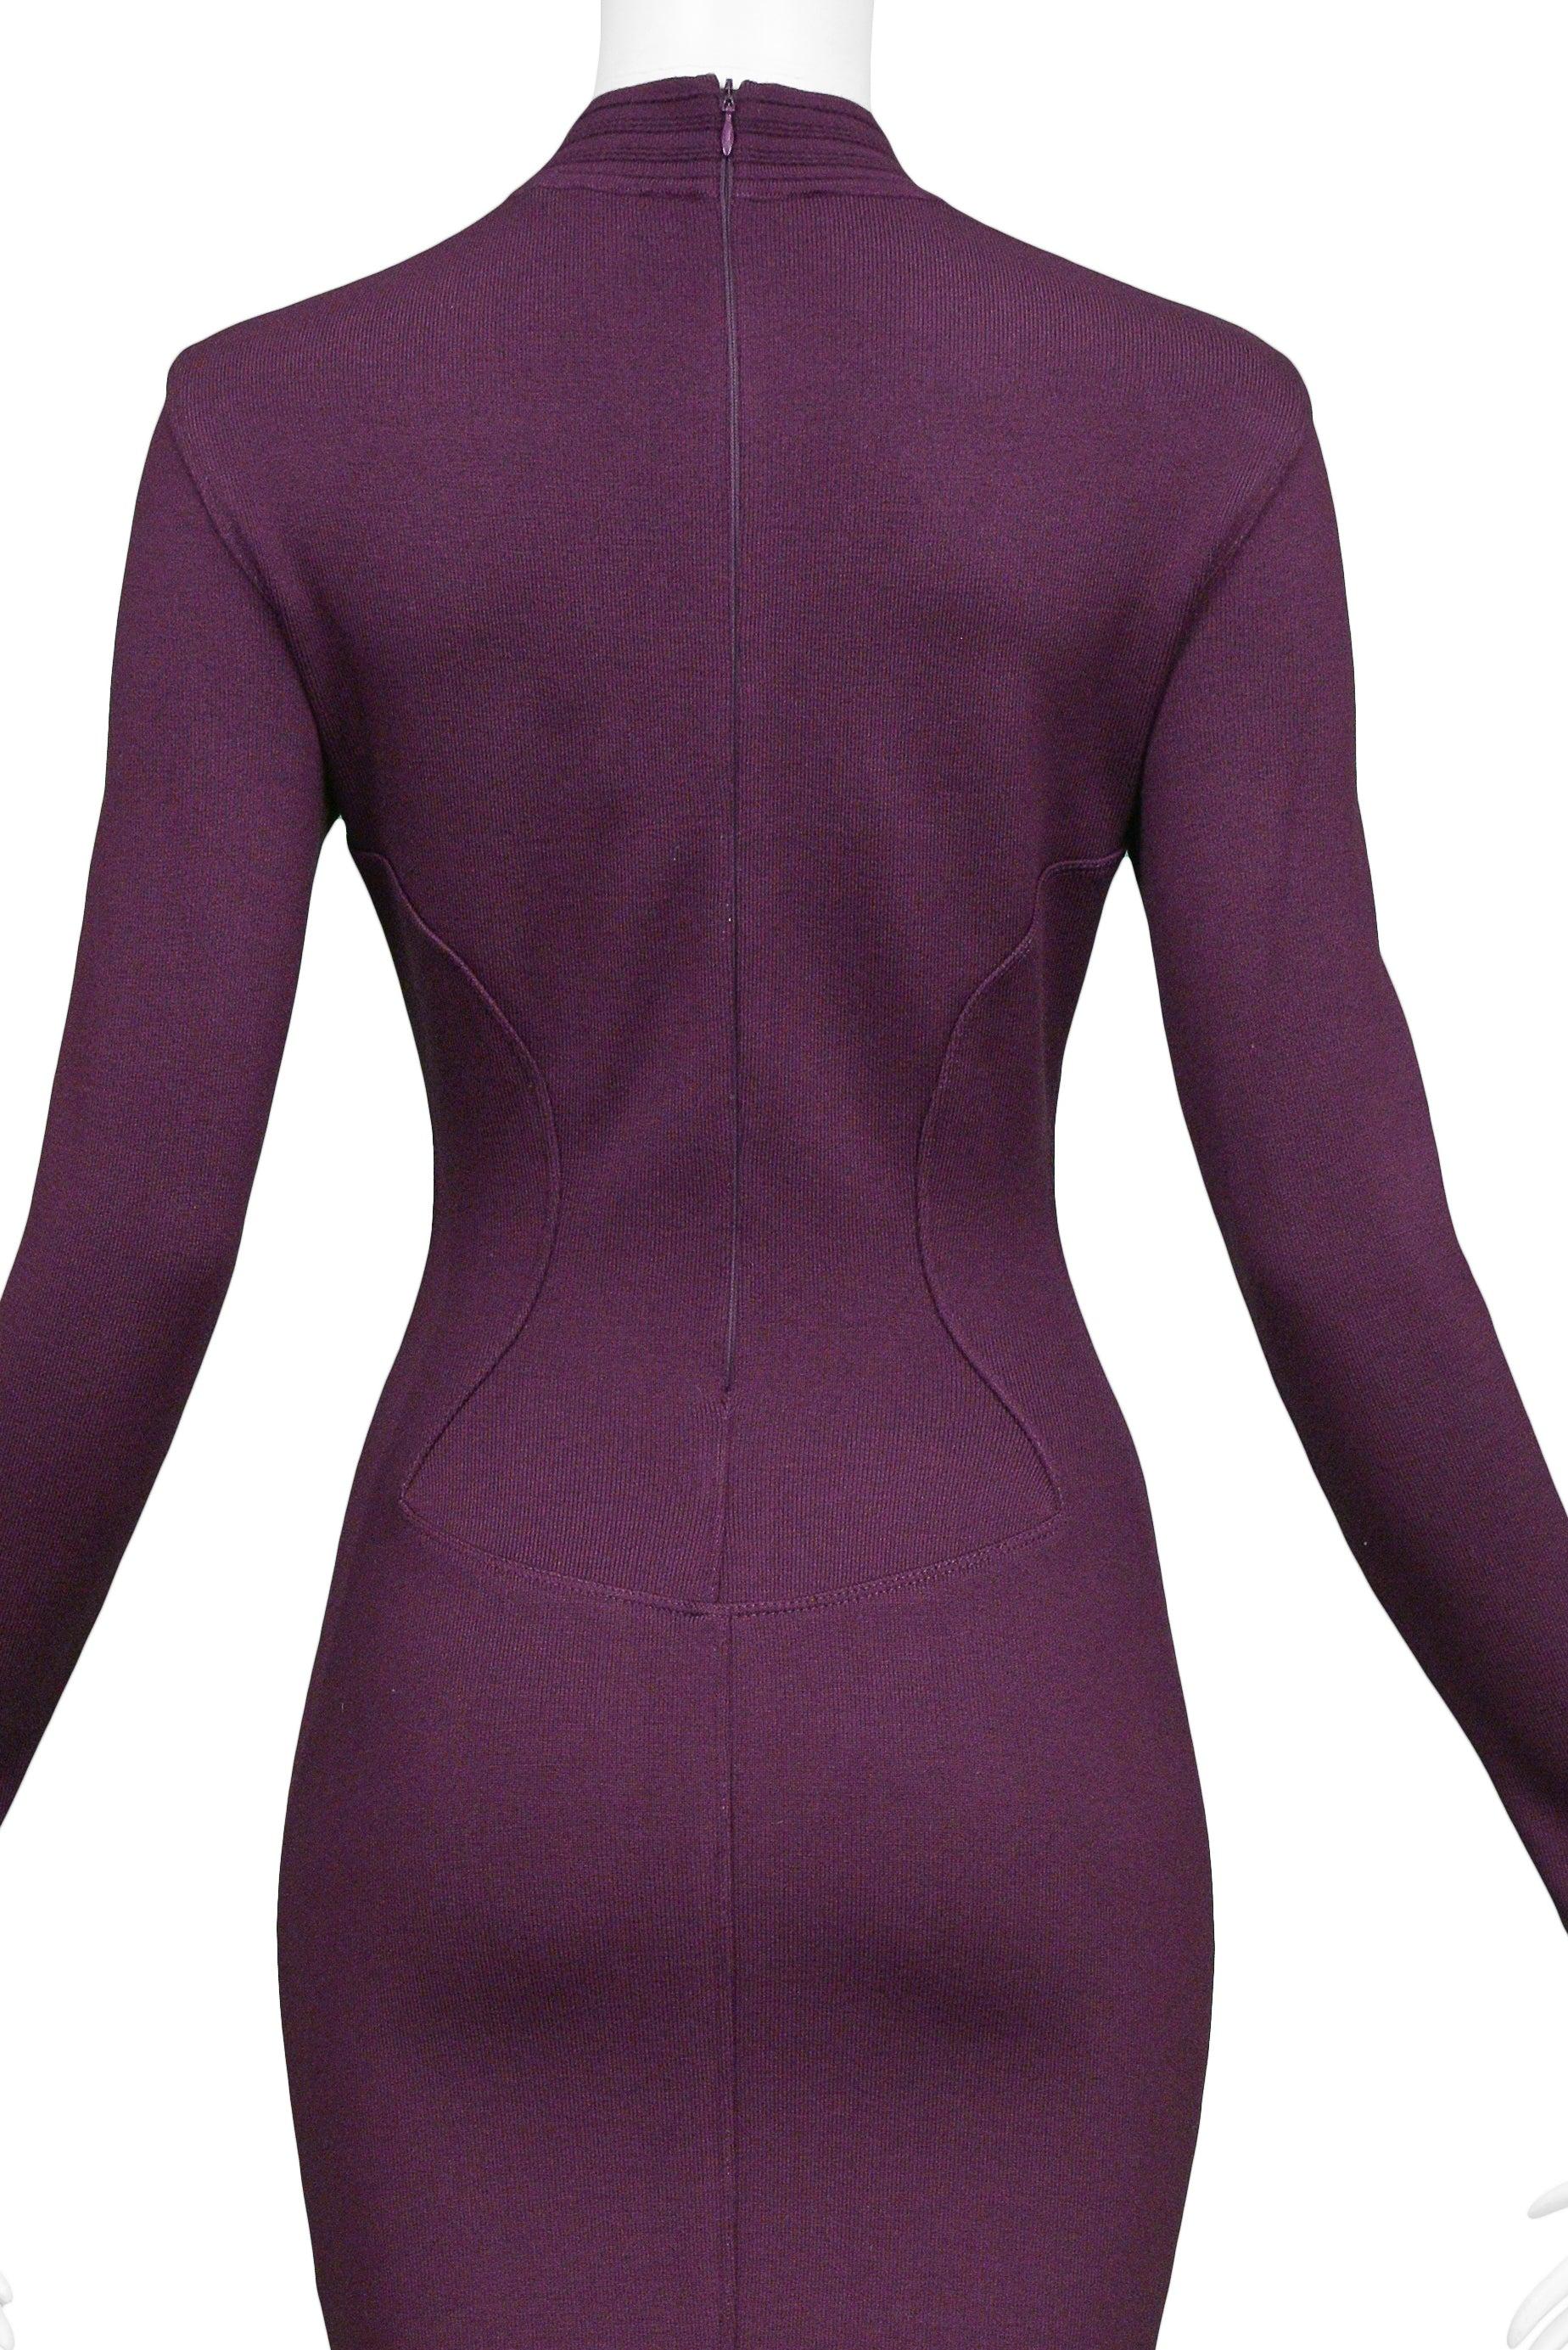 Azzedine Alaia Purple Long Sleeve High V Neck Dress 1991 1